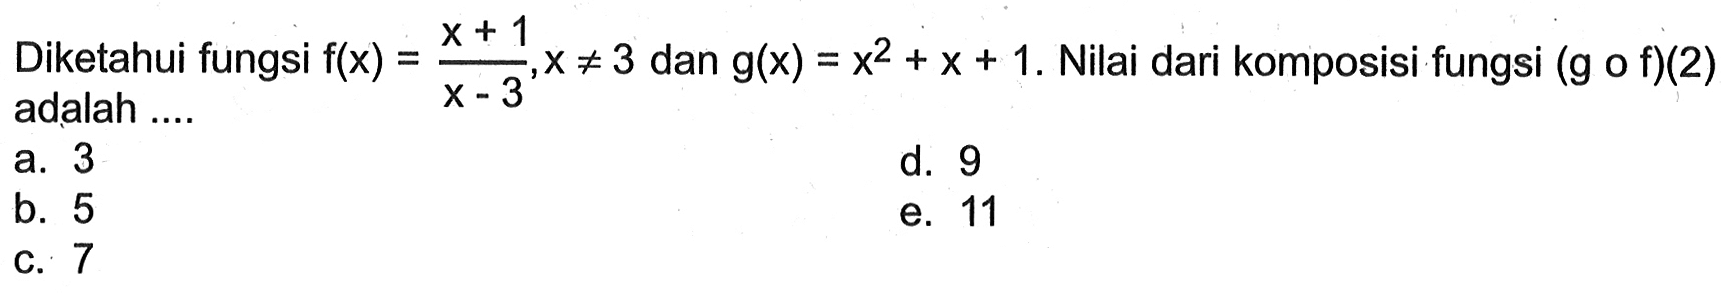 Diketahui fungsi f(x)=(x+1)/(x-3), x=/=3 dan g(x)=x^2+x+1. Nilai dari komposisi fungsi (gof)(2) adalah ....